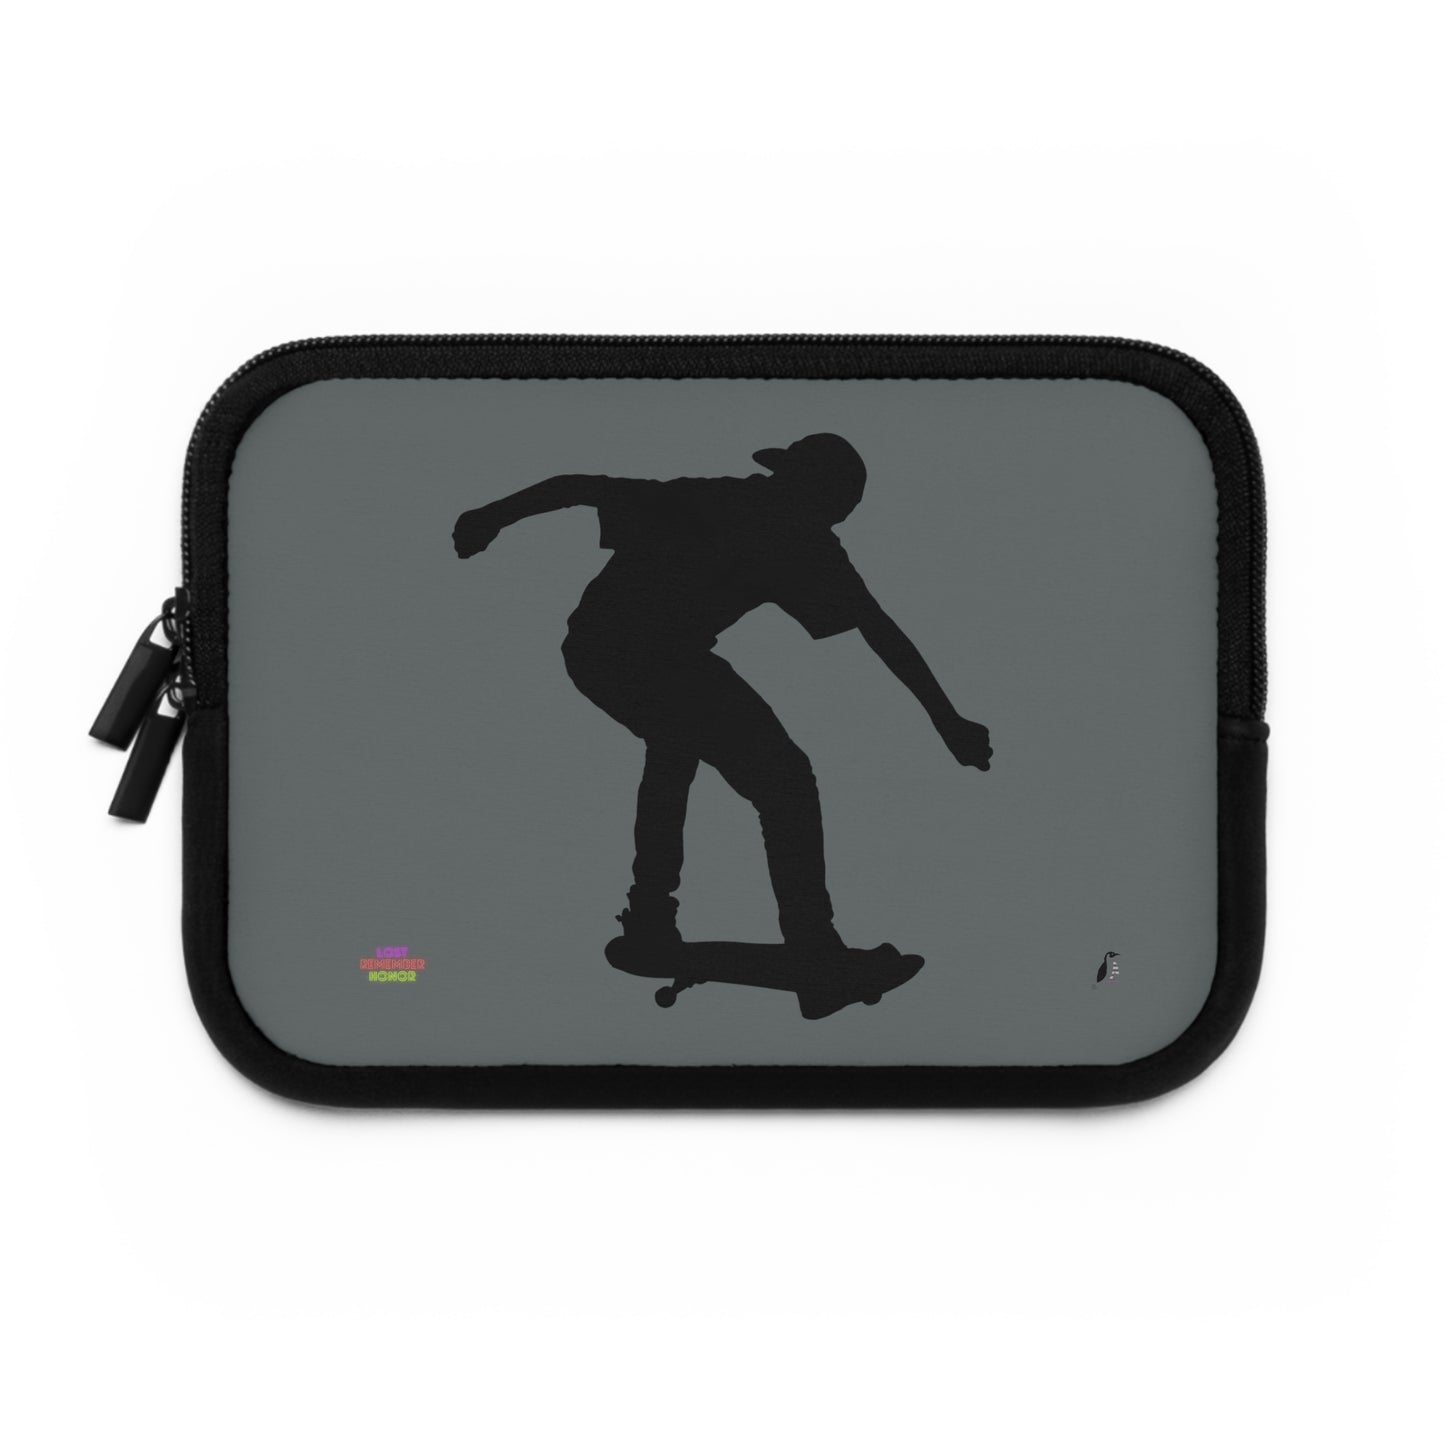 Laptop Sleeve: Skateboarding Dark Grey